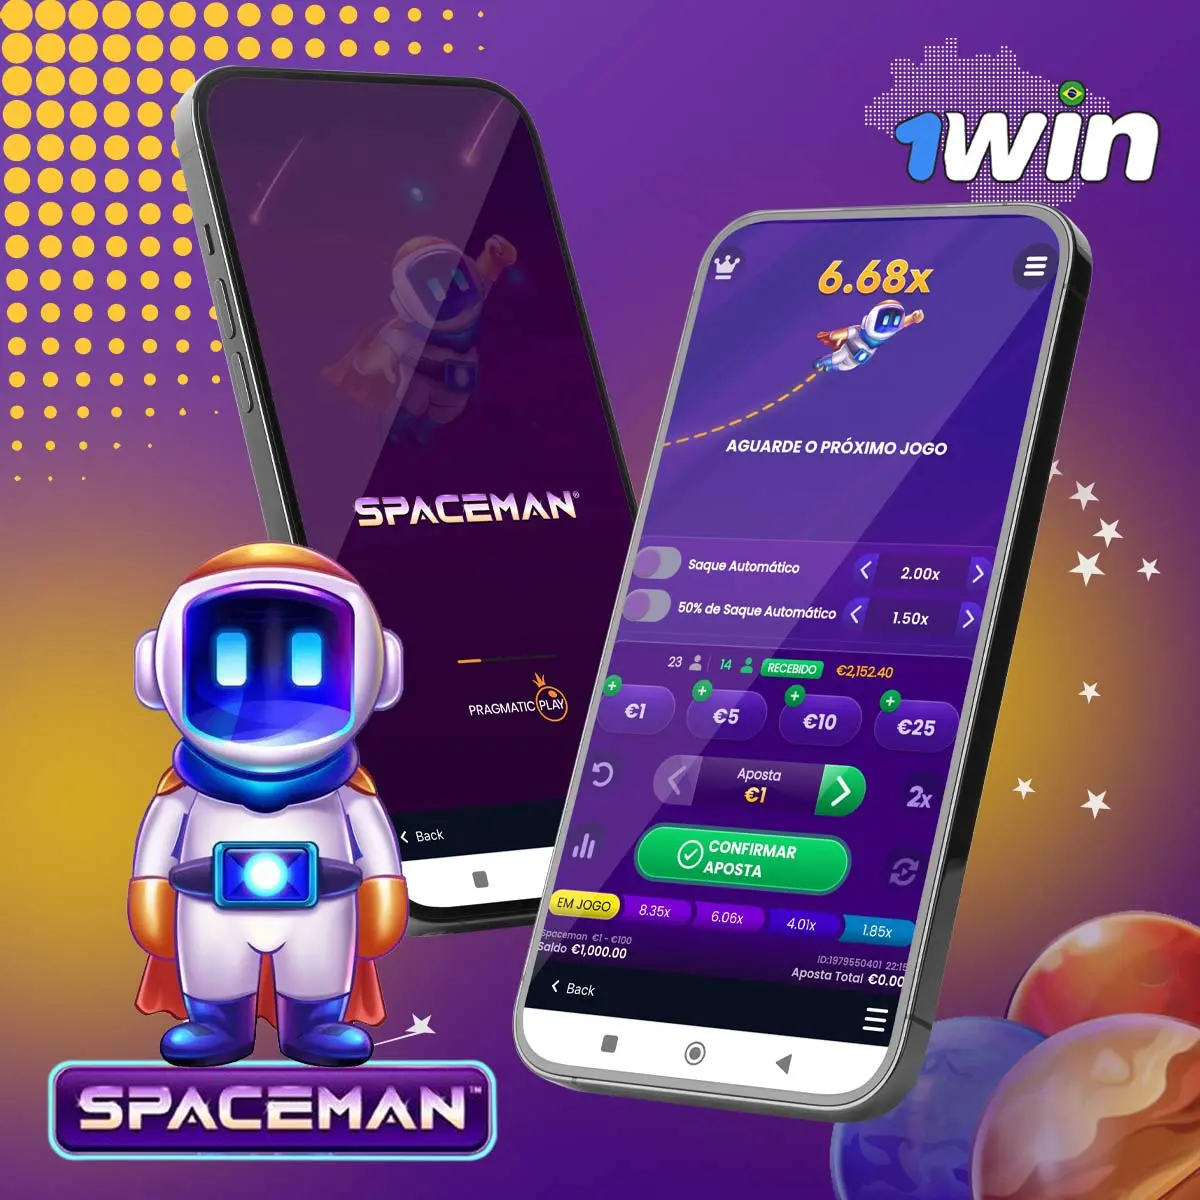 Análise completa do jogo Spaceman da 1Win no Brasil